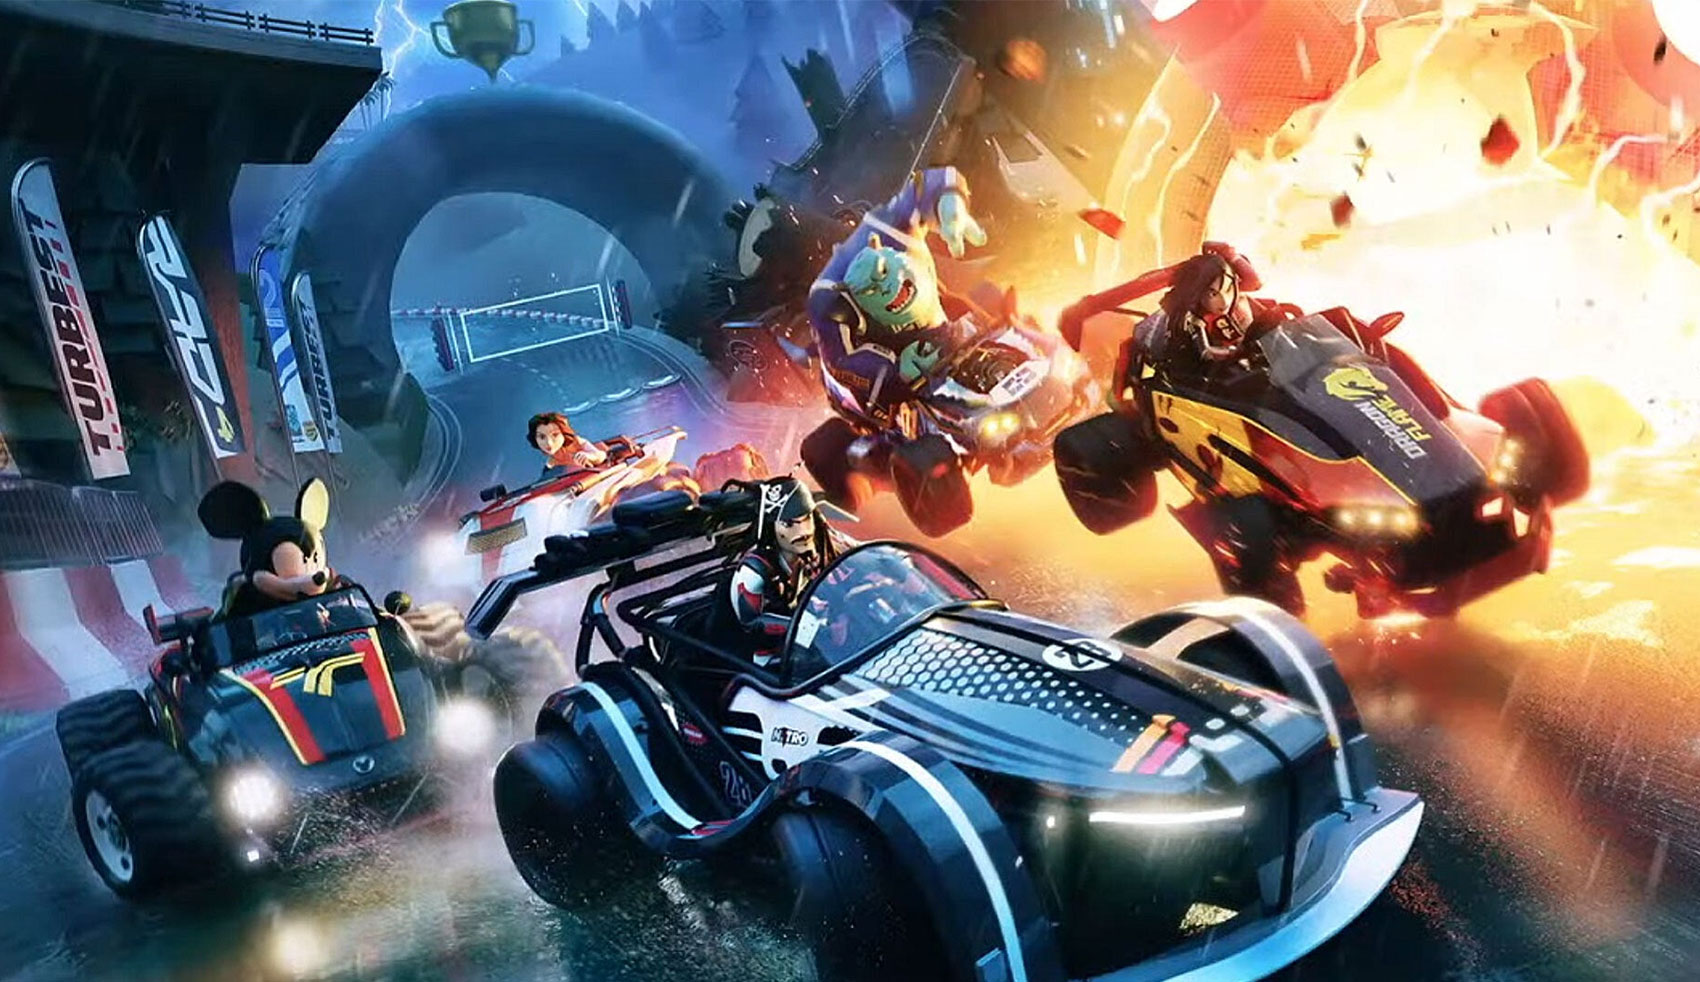 Disney Speedstorm, o jogo de Kart Free to play – Mundo dos Animes